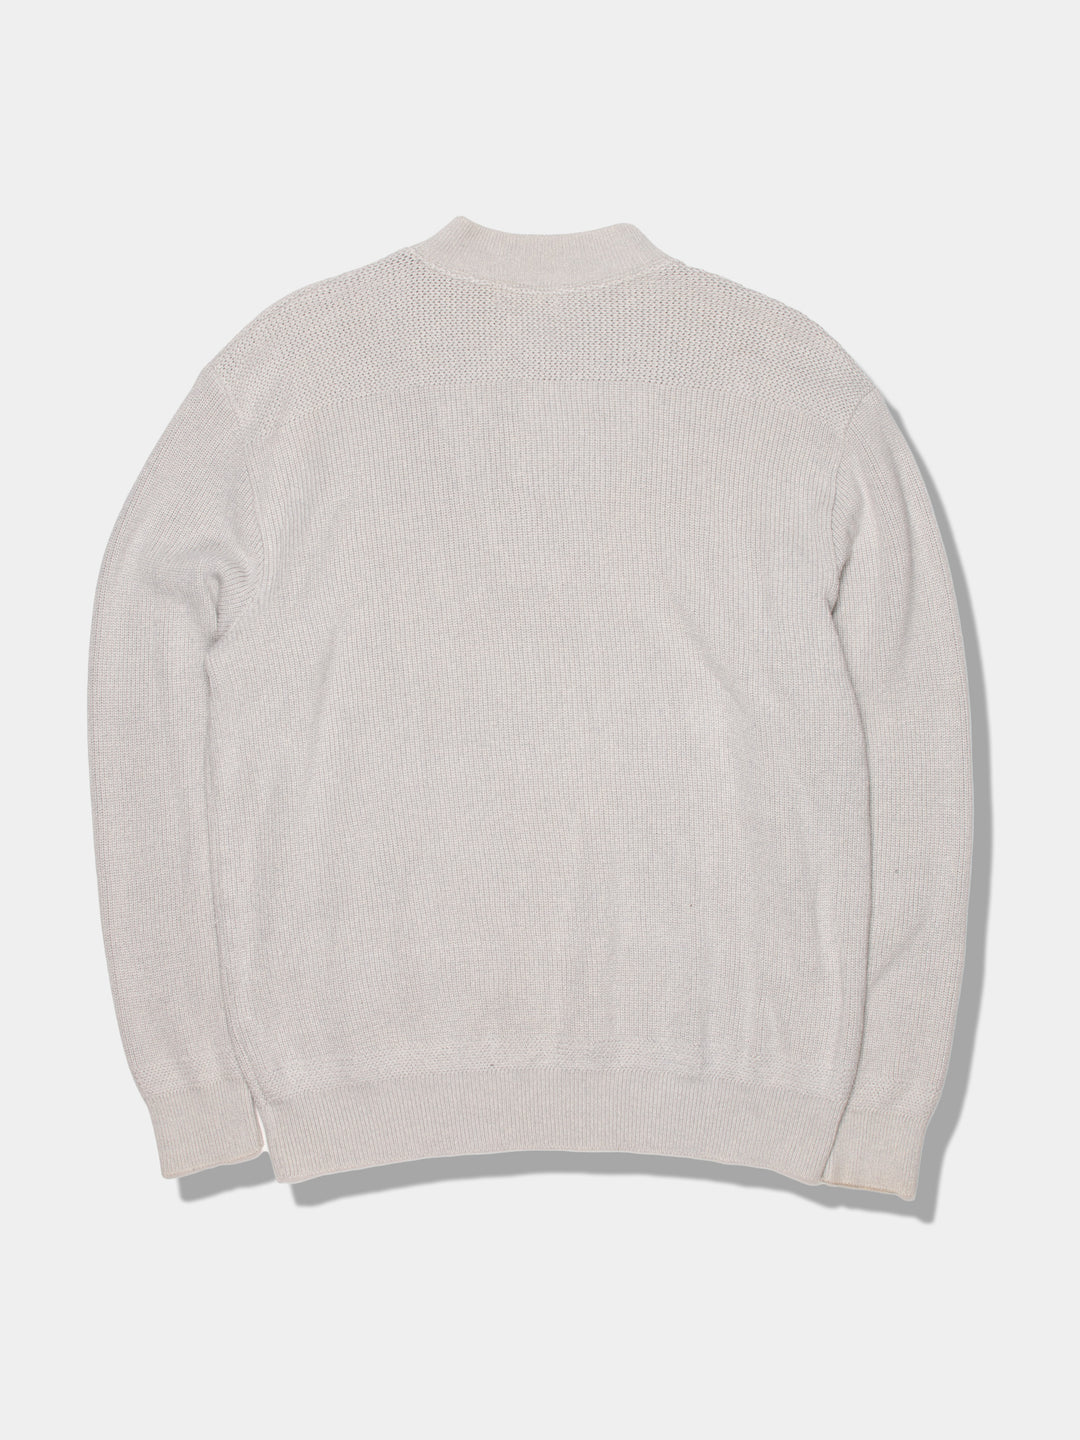 Modern L.L.Bean Buttoned Sweater (L)